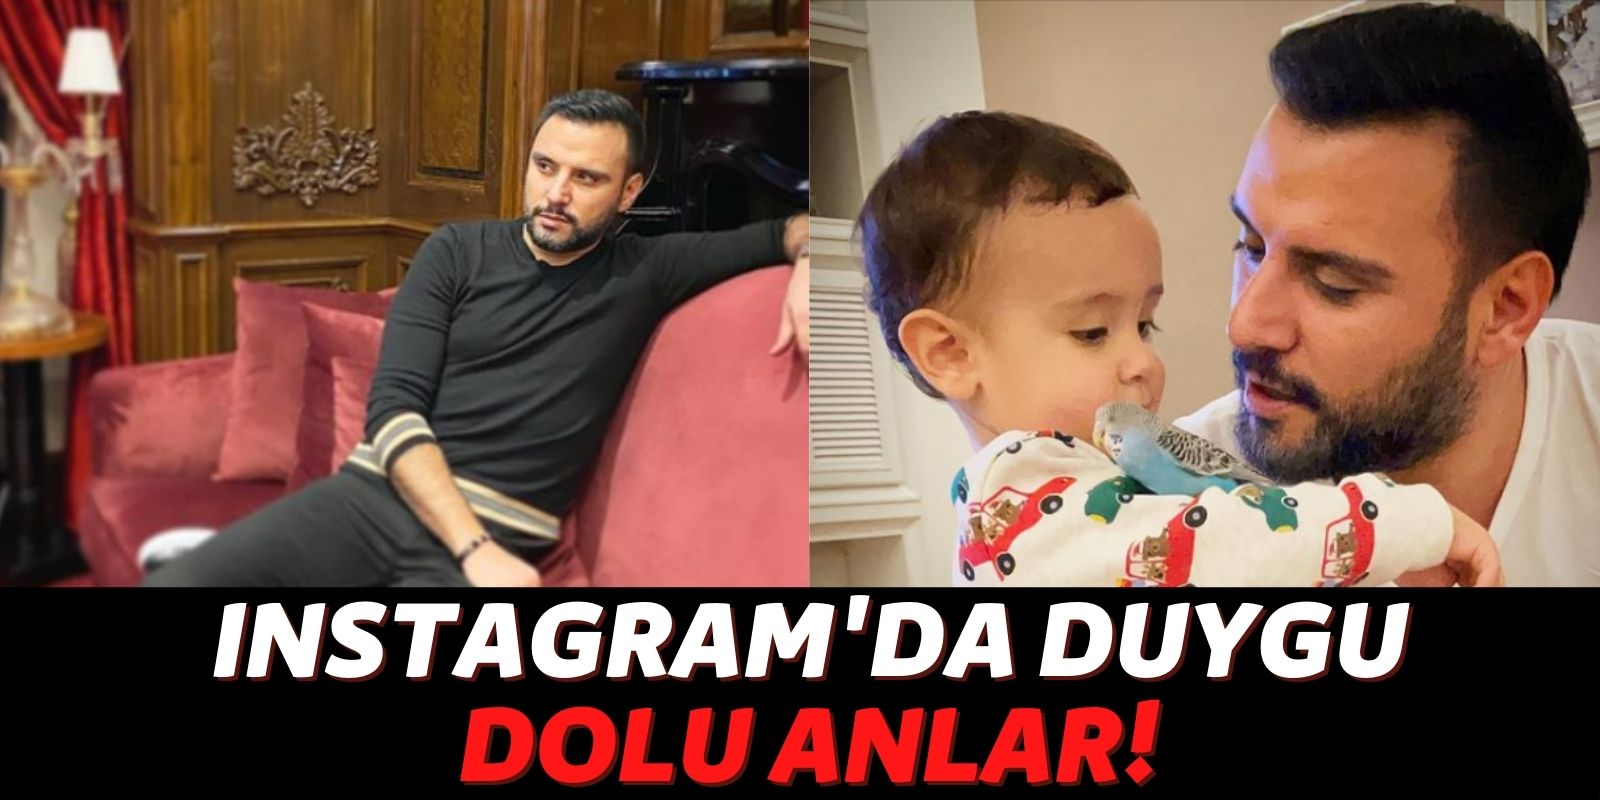 Eşi Buse Varol ve Ailesiyle Vakit Geçiren Alişan’ın Son Instagram Paylaşımı Herkesi Duygulandırdı: “Her Şeylerim!”